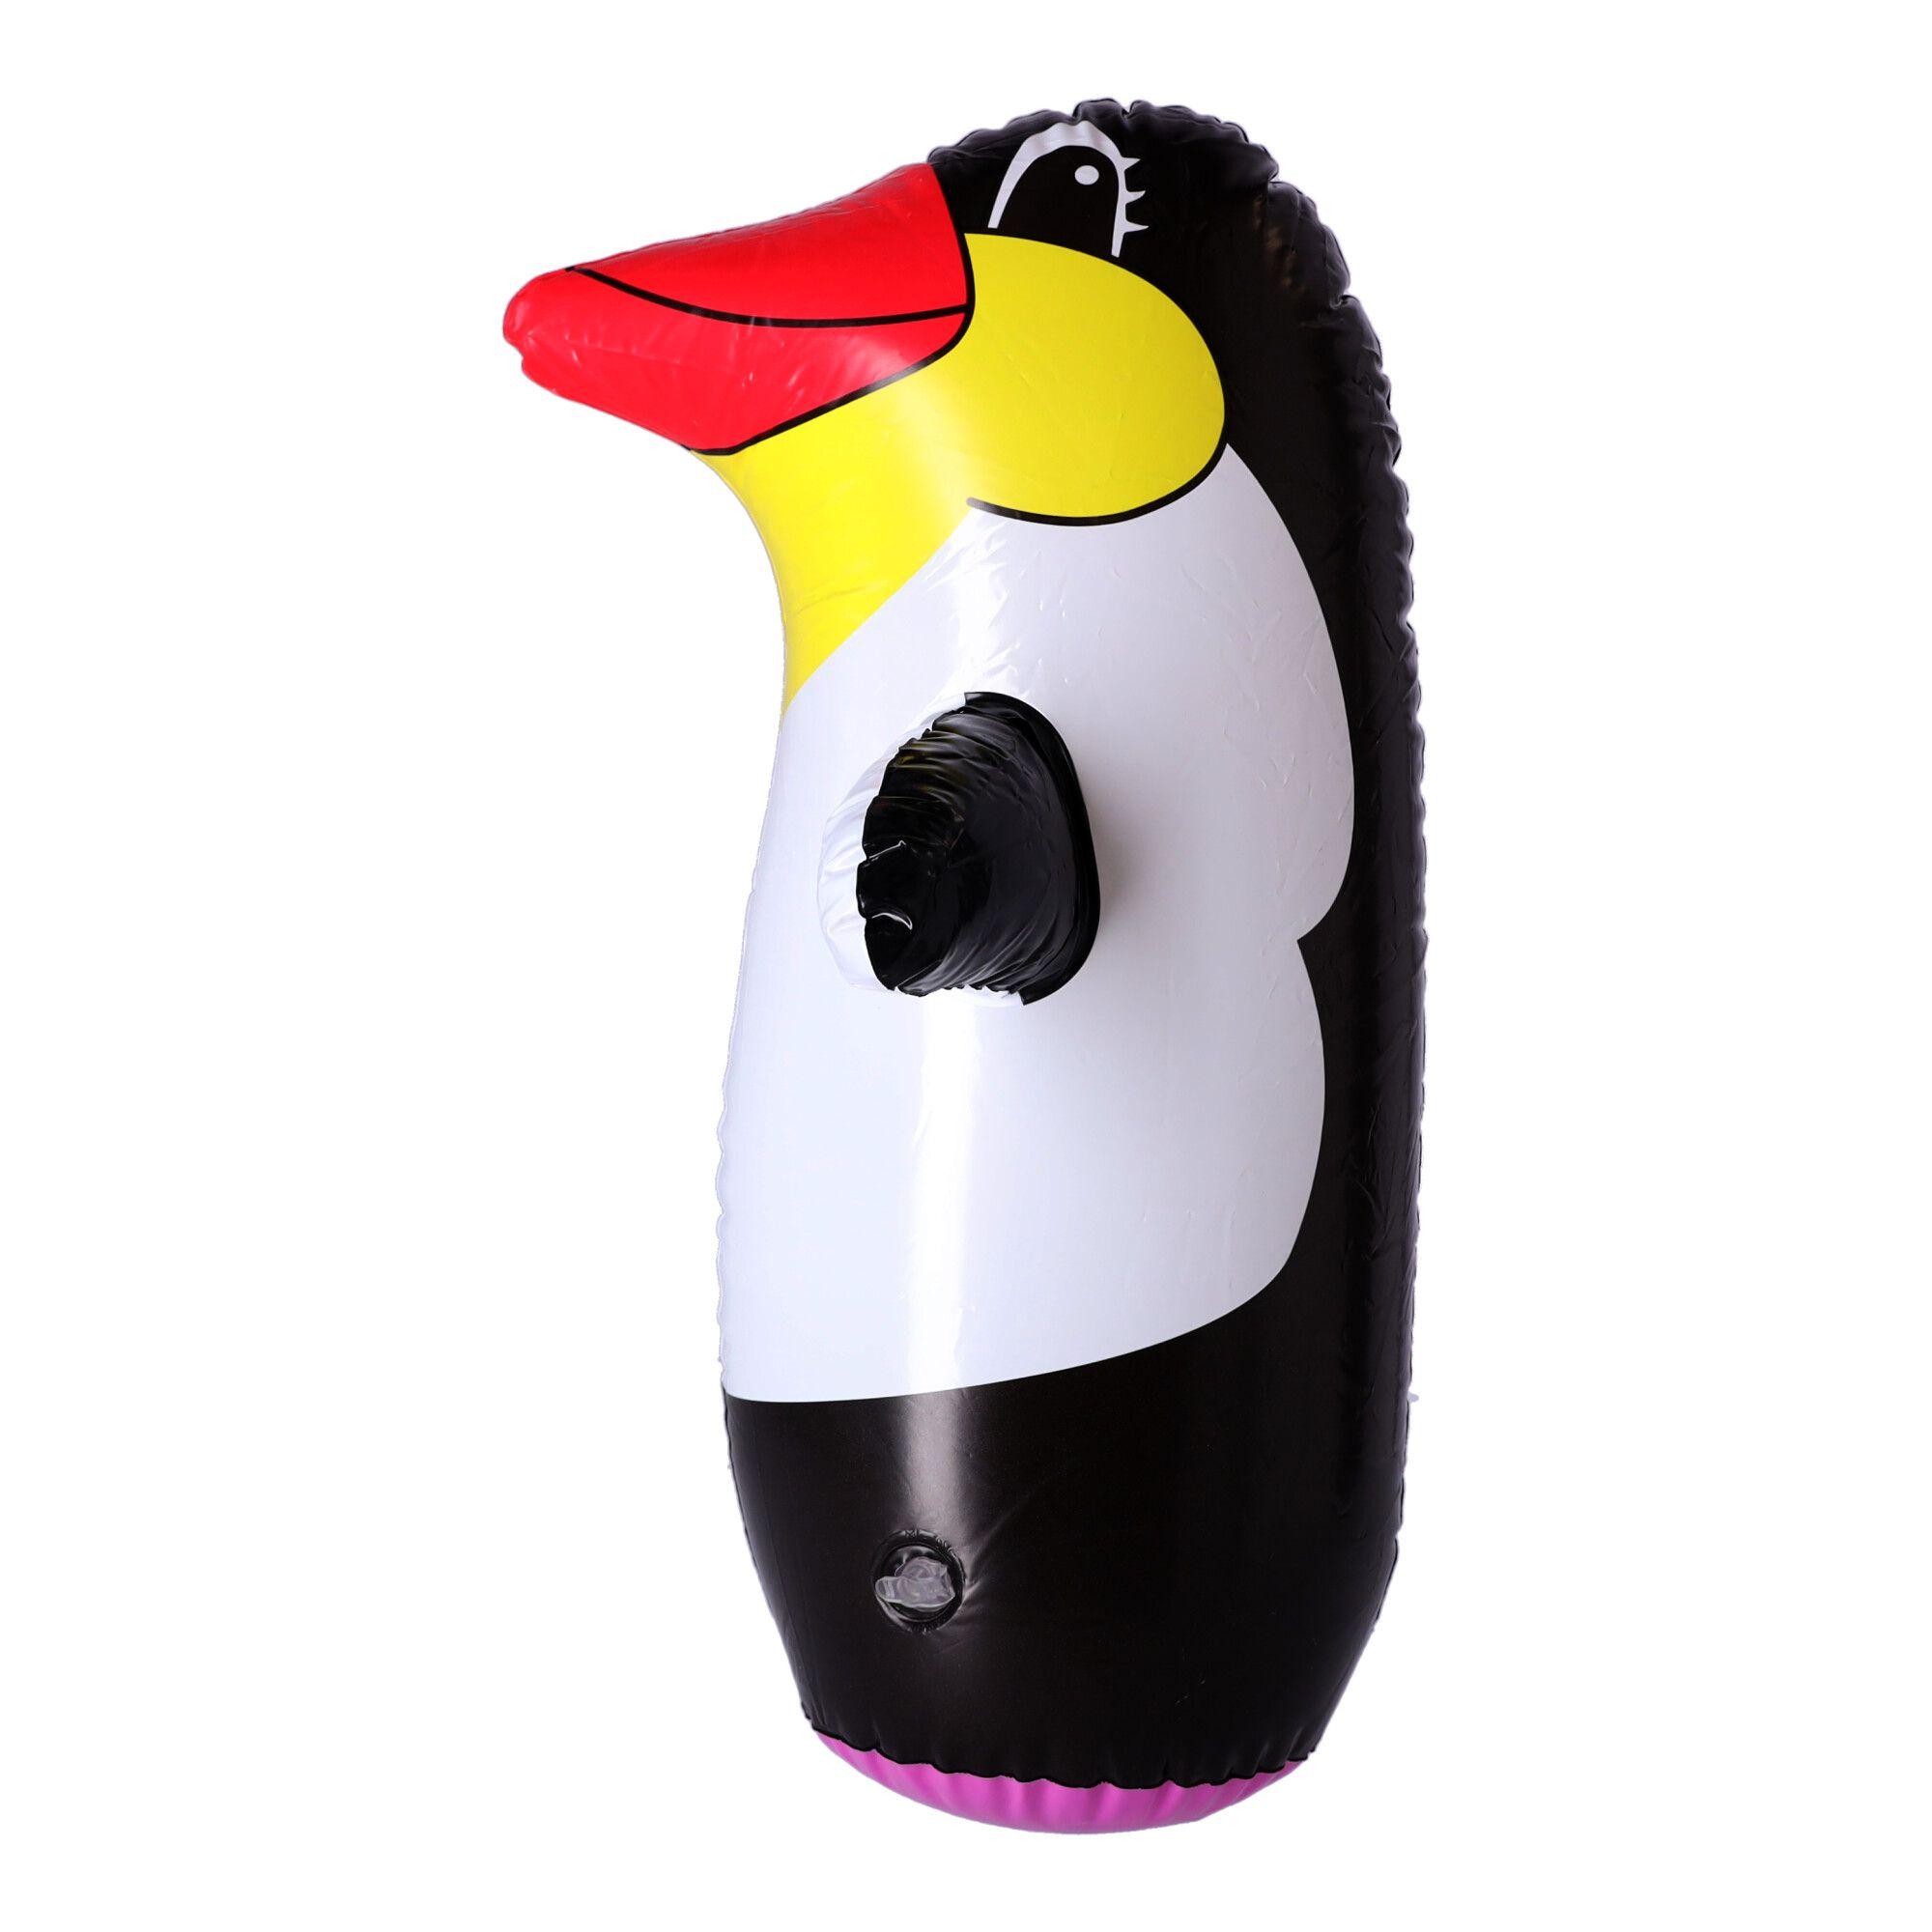 Dmuchany worek treningowy dla dzieci, Zabawka dla dzieci – pingwin, 45 cm.